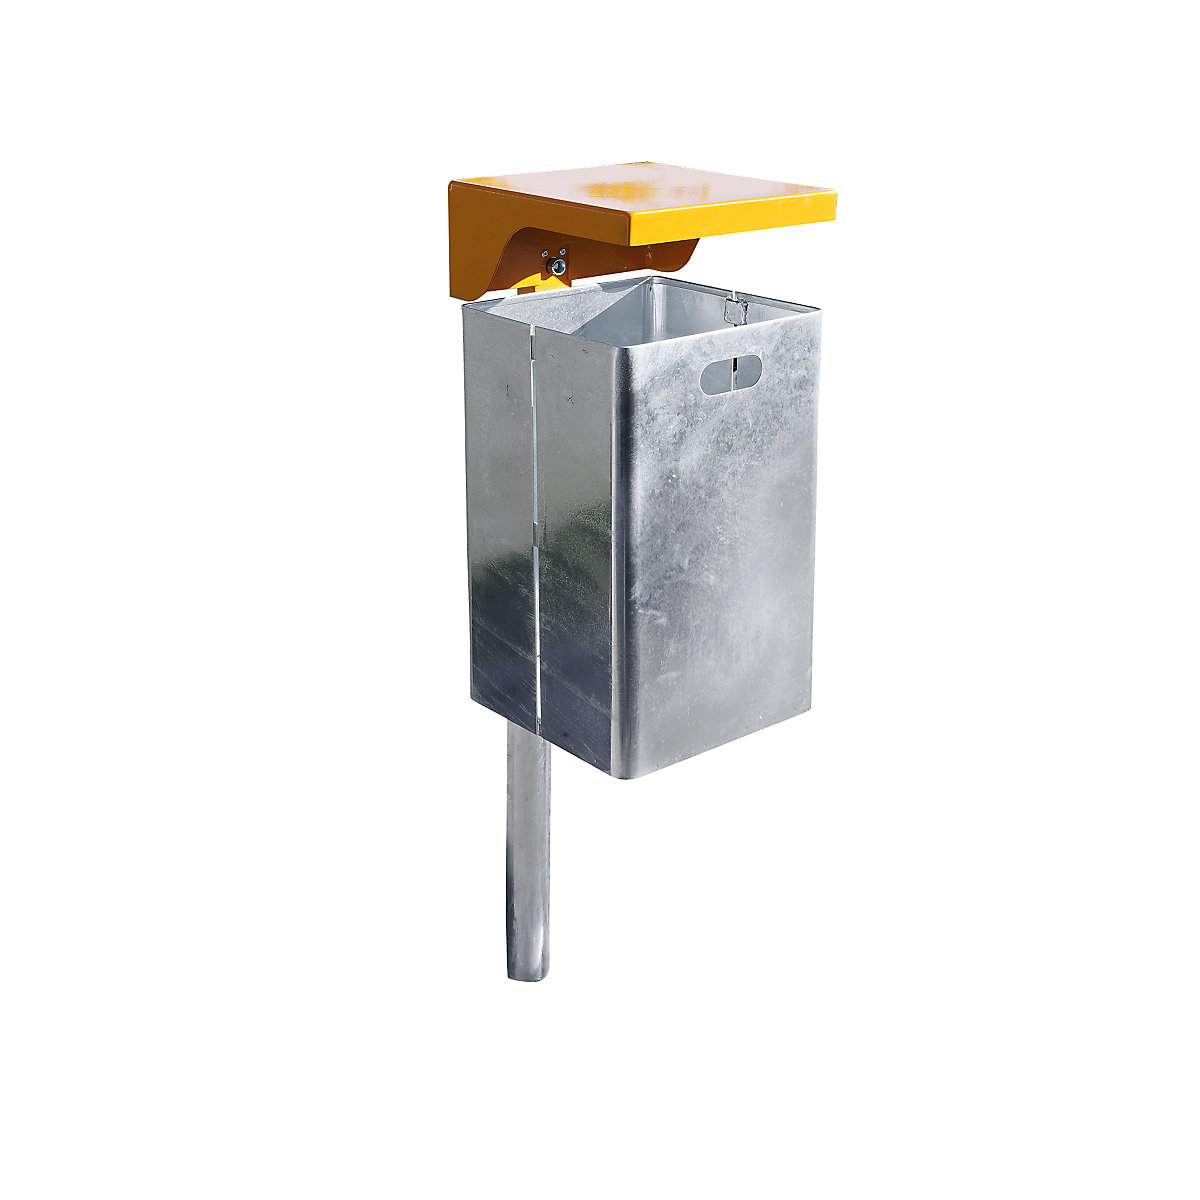 Abfallbehälter für außen, feuerverzinkt, Volumen 50 l, BxHxT 310 x 685 x 360 mm, Haube orange-3